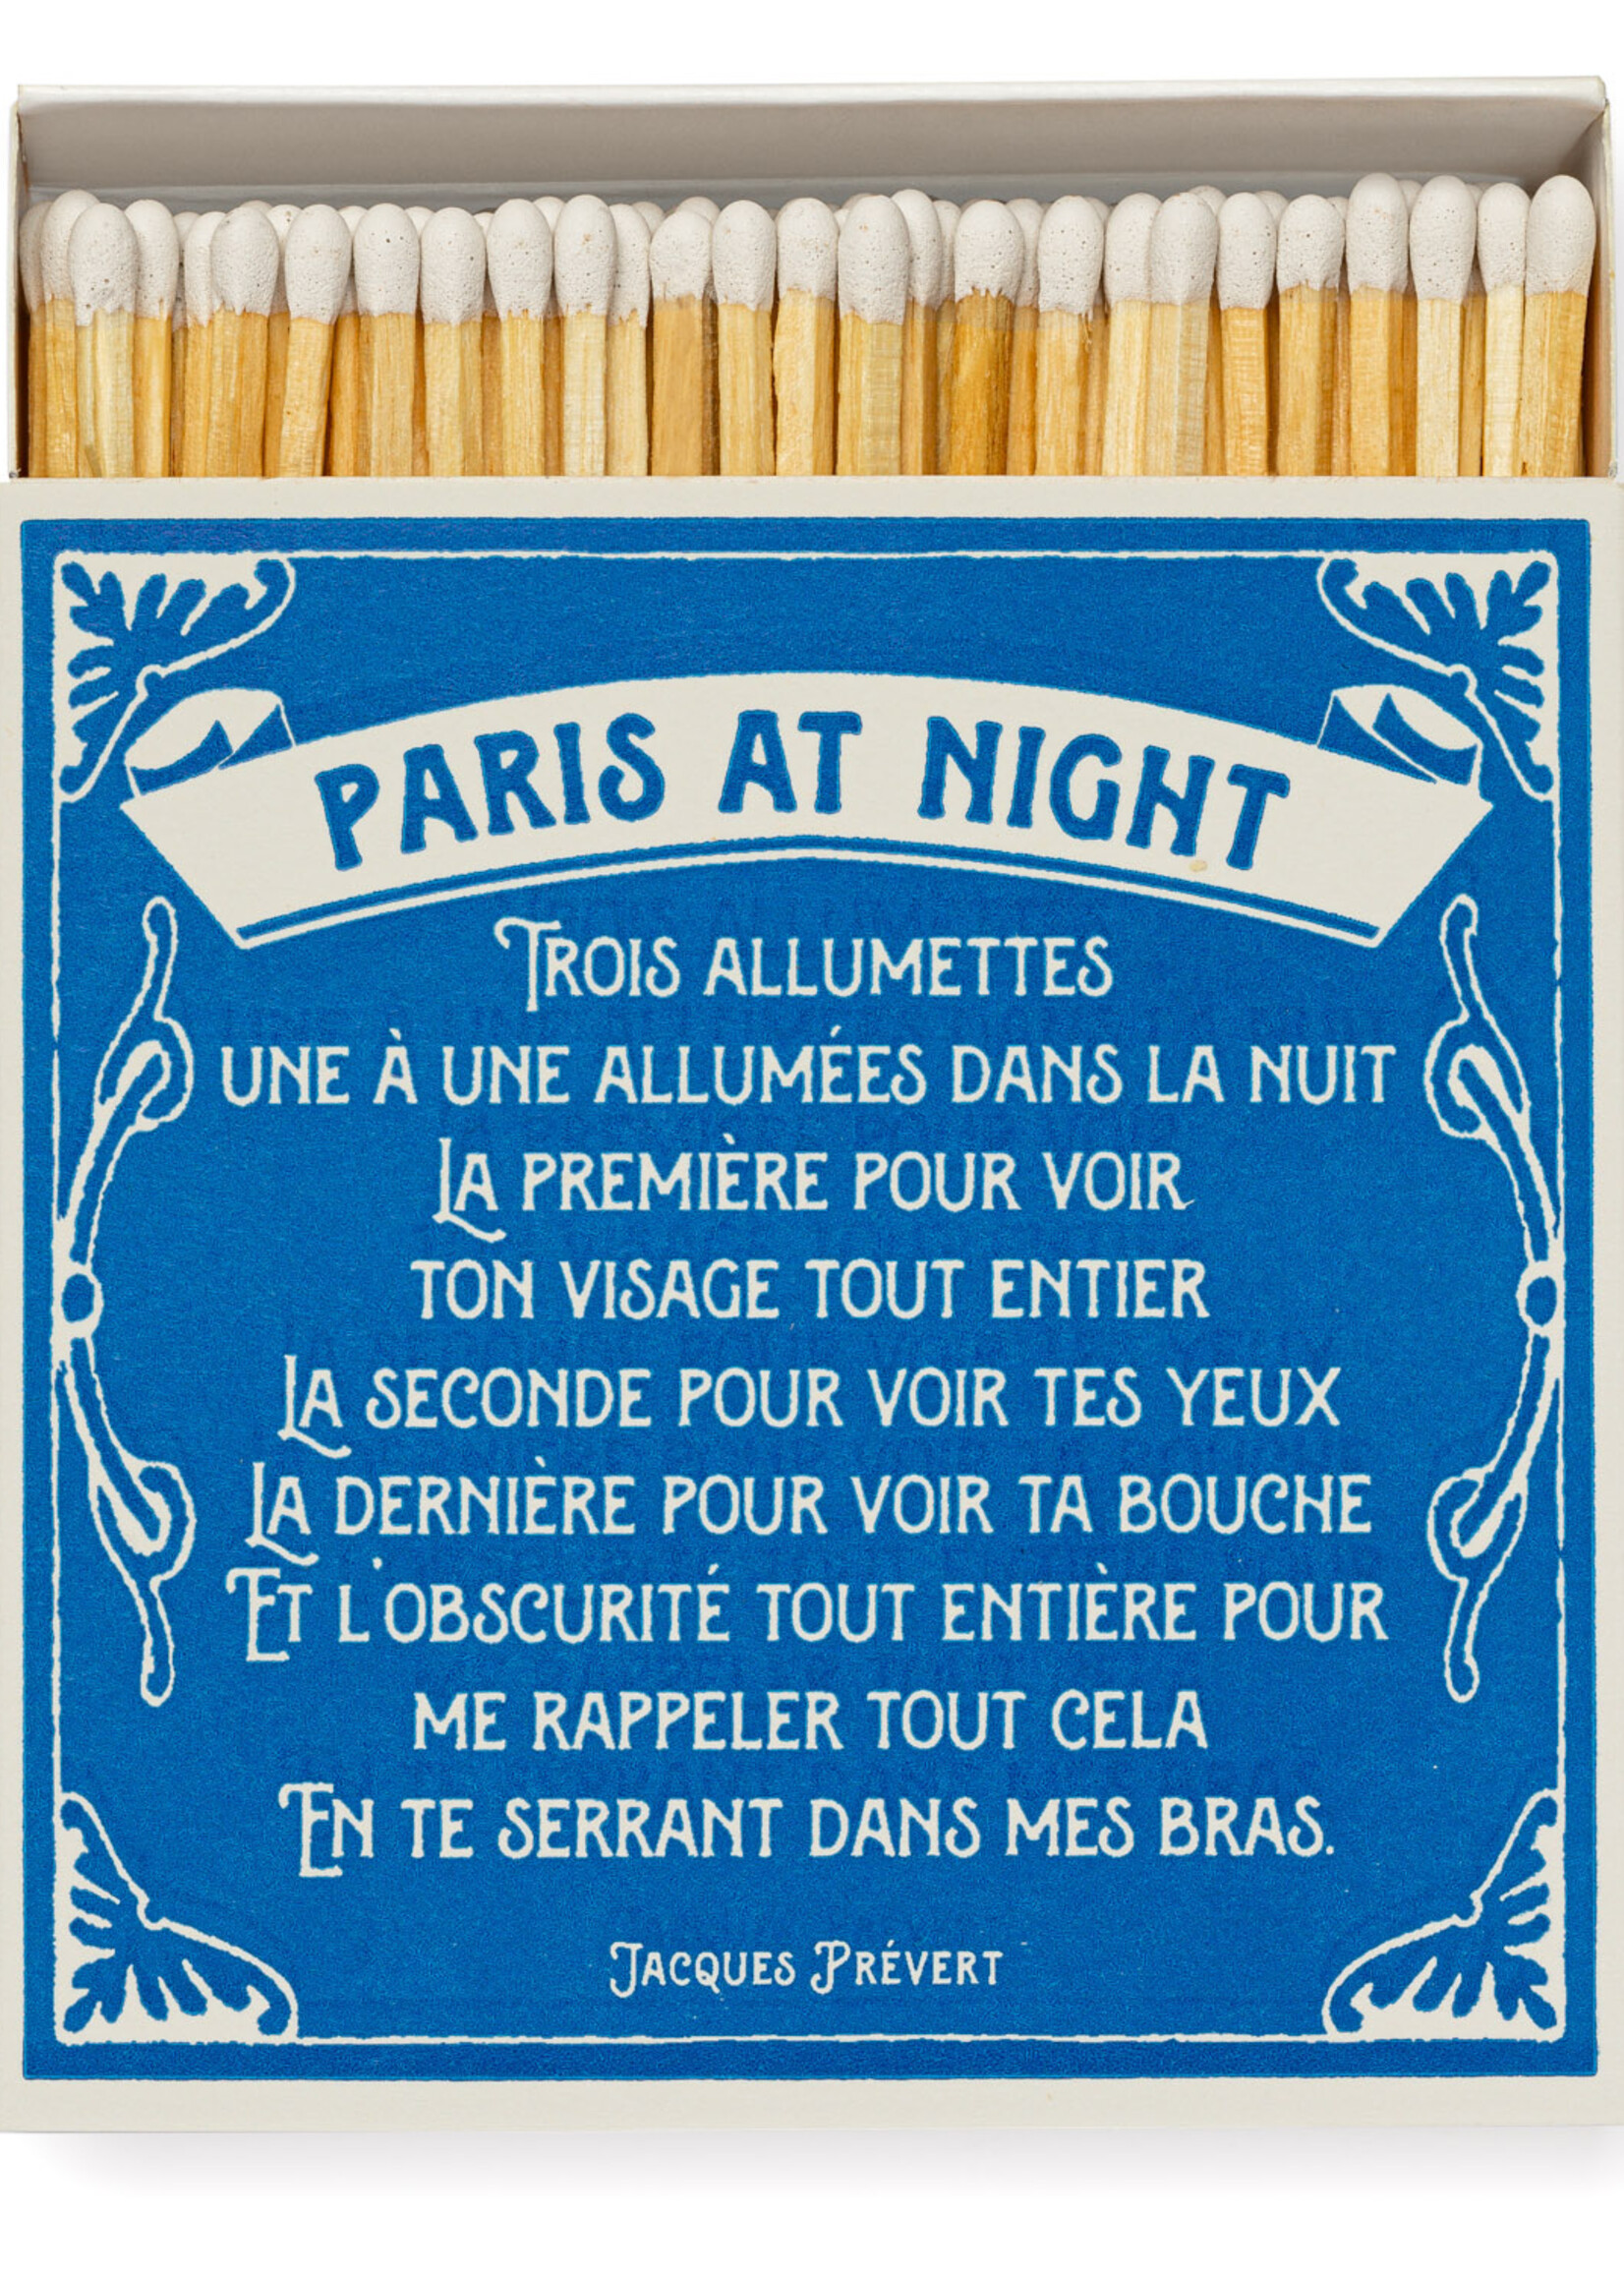 Archivist Allumettes Paris at Night